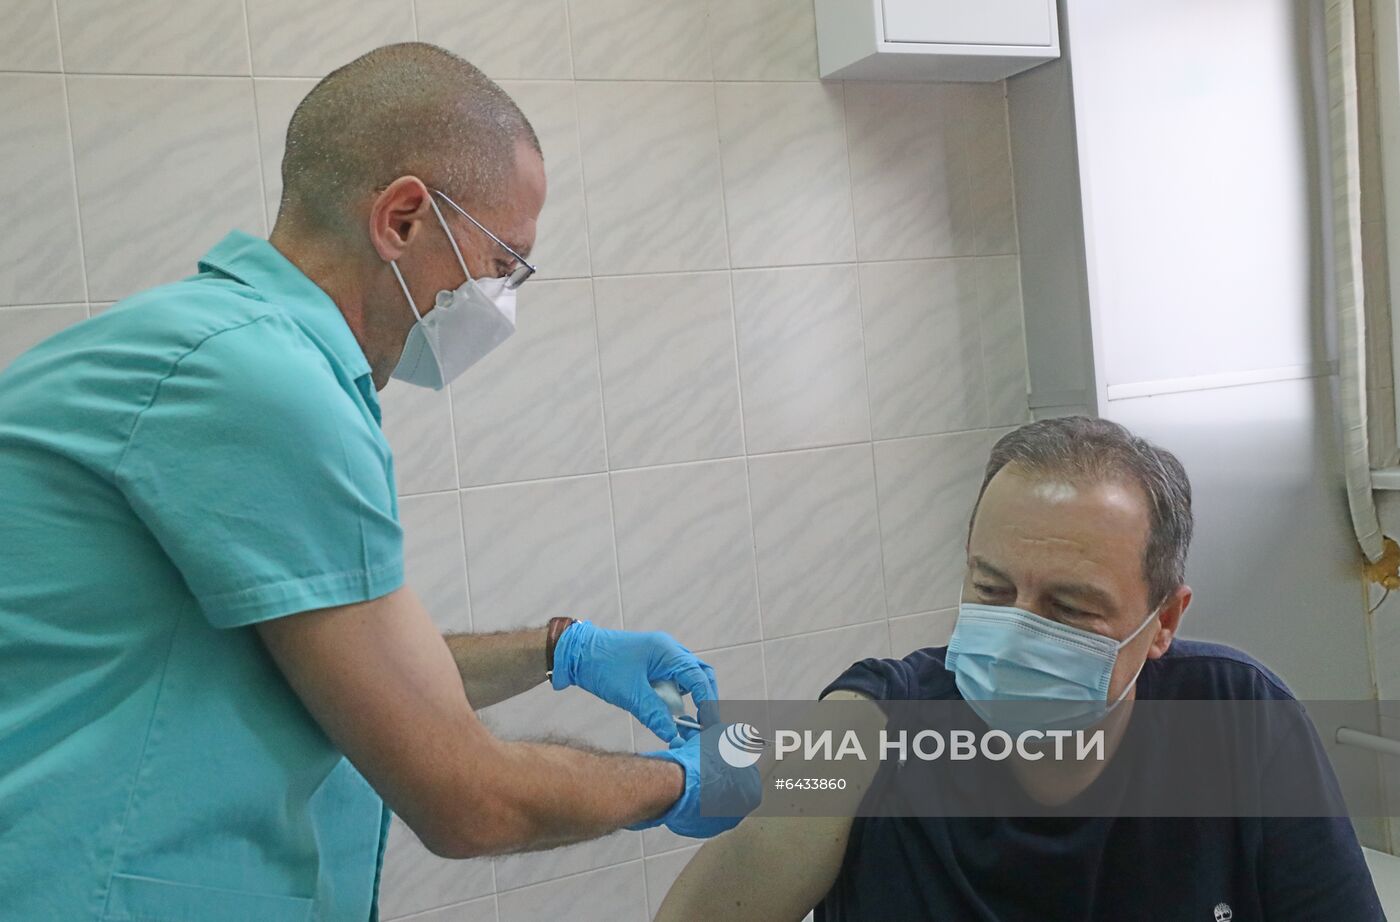 Вакцинация российской вакциной "Спутник V" официальных лиц Сербии